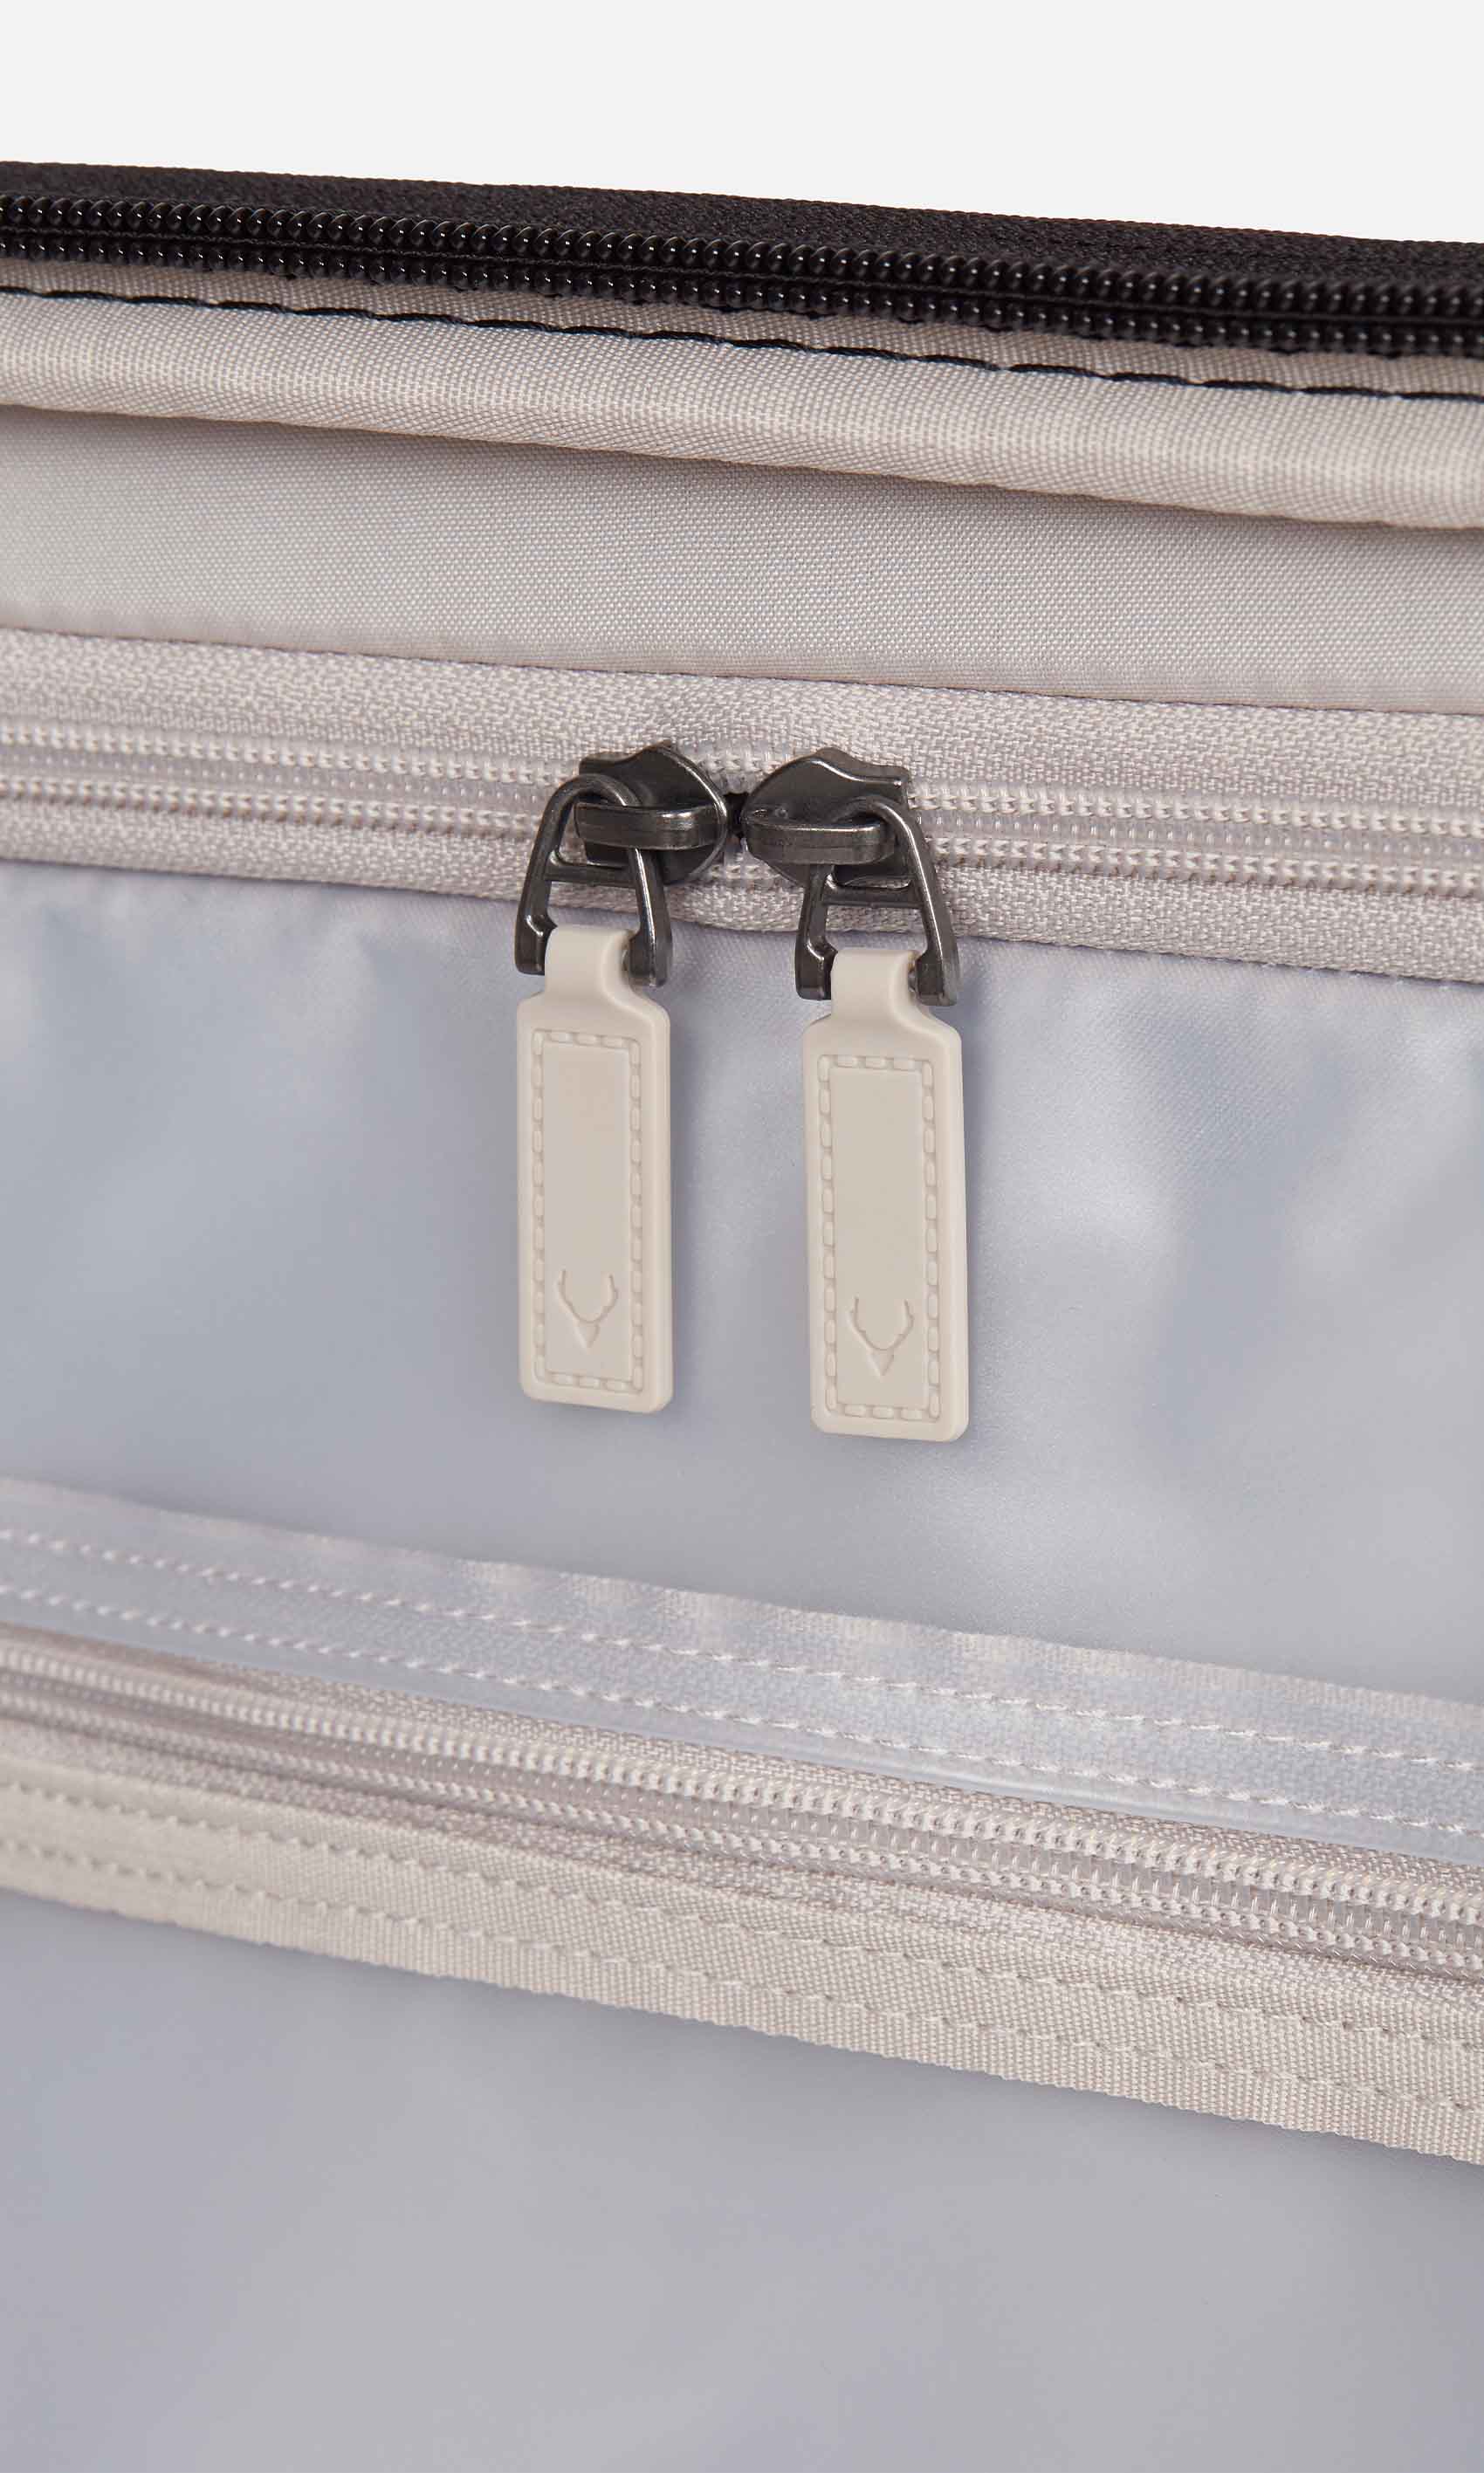 Antler Luggage -  Clifton medium in sycamore - Hard Suitcases Clifton Medium Suitcase Sycamore (Green) | Hard Suitcase | Antler UK